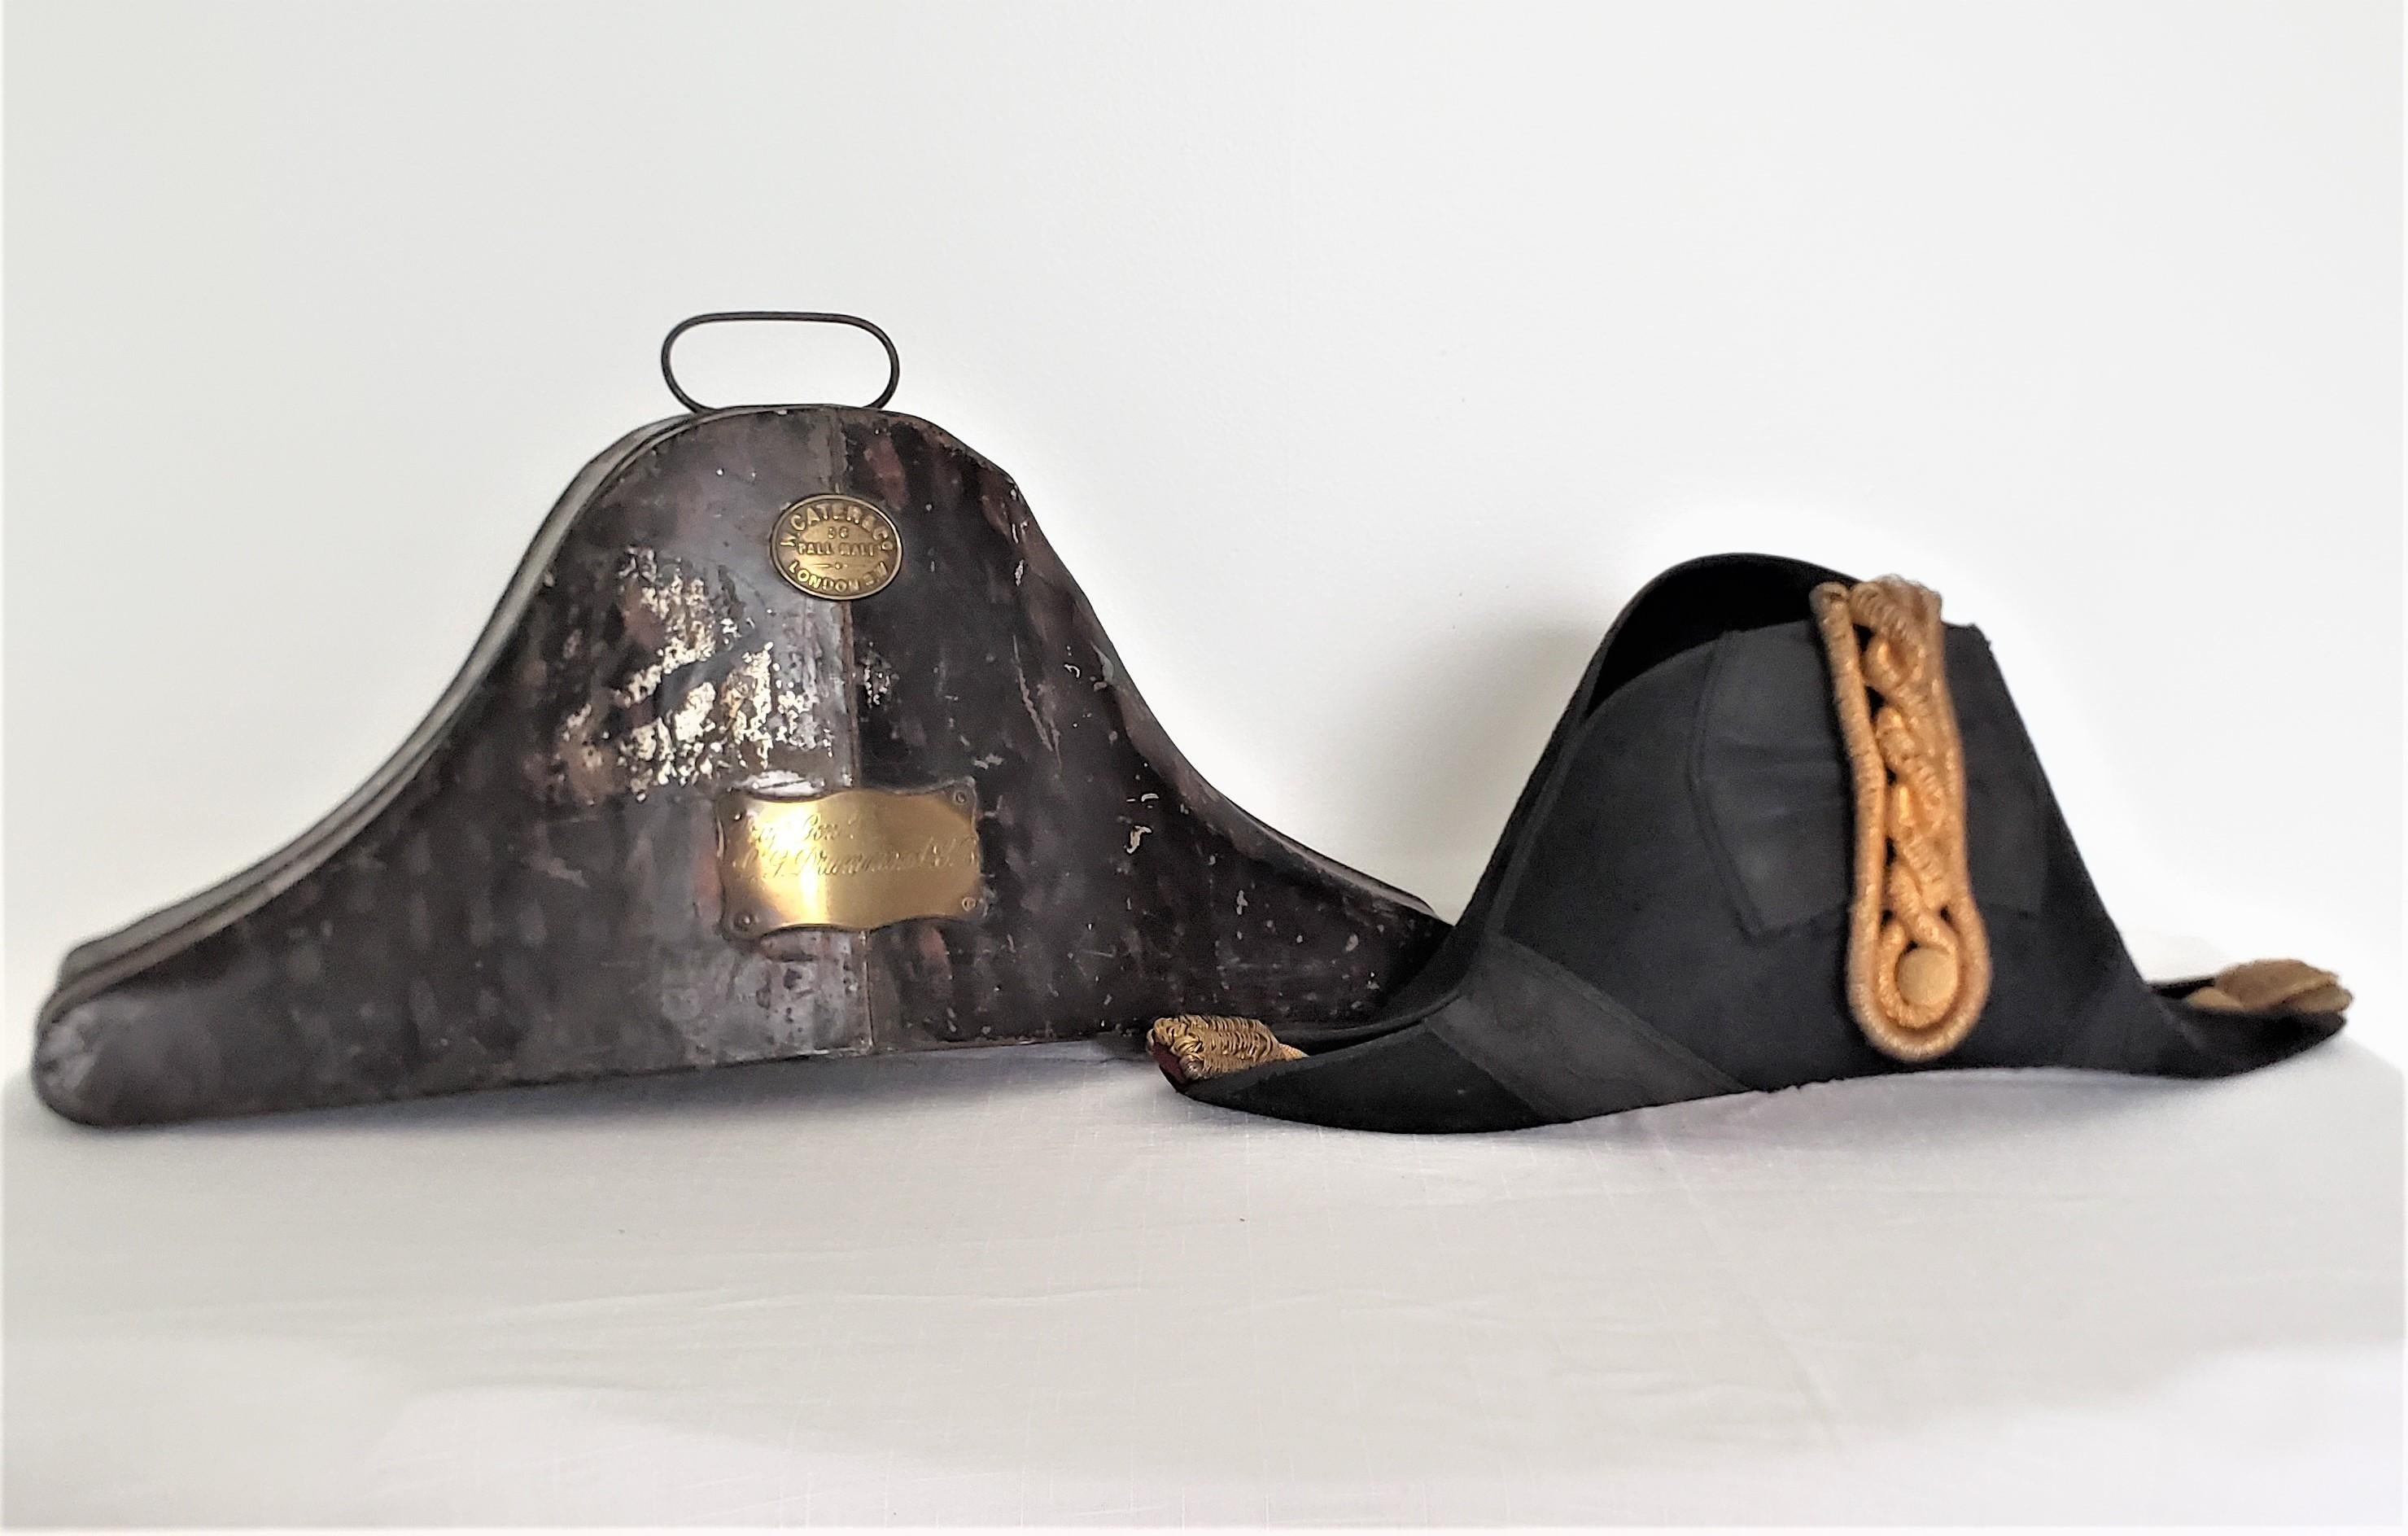 Ce chapeau militaire antique et sa boîte à chapeau ajustée ont été fabriqués par W. Cater de Londres en Angleterre pour le Brigadier Général Lawrence Drummond vers 1915 dans le style de l'époque. Le chapeau a la forme d'un bicorne d'époque avec des